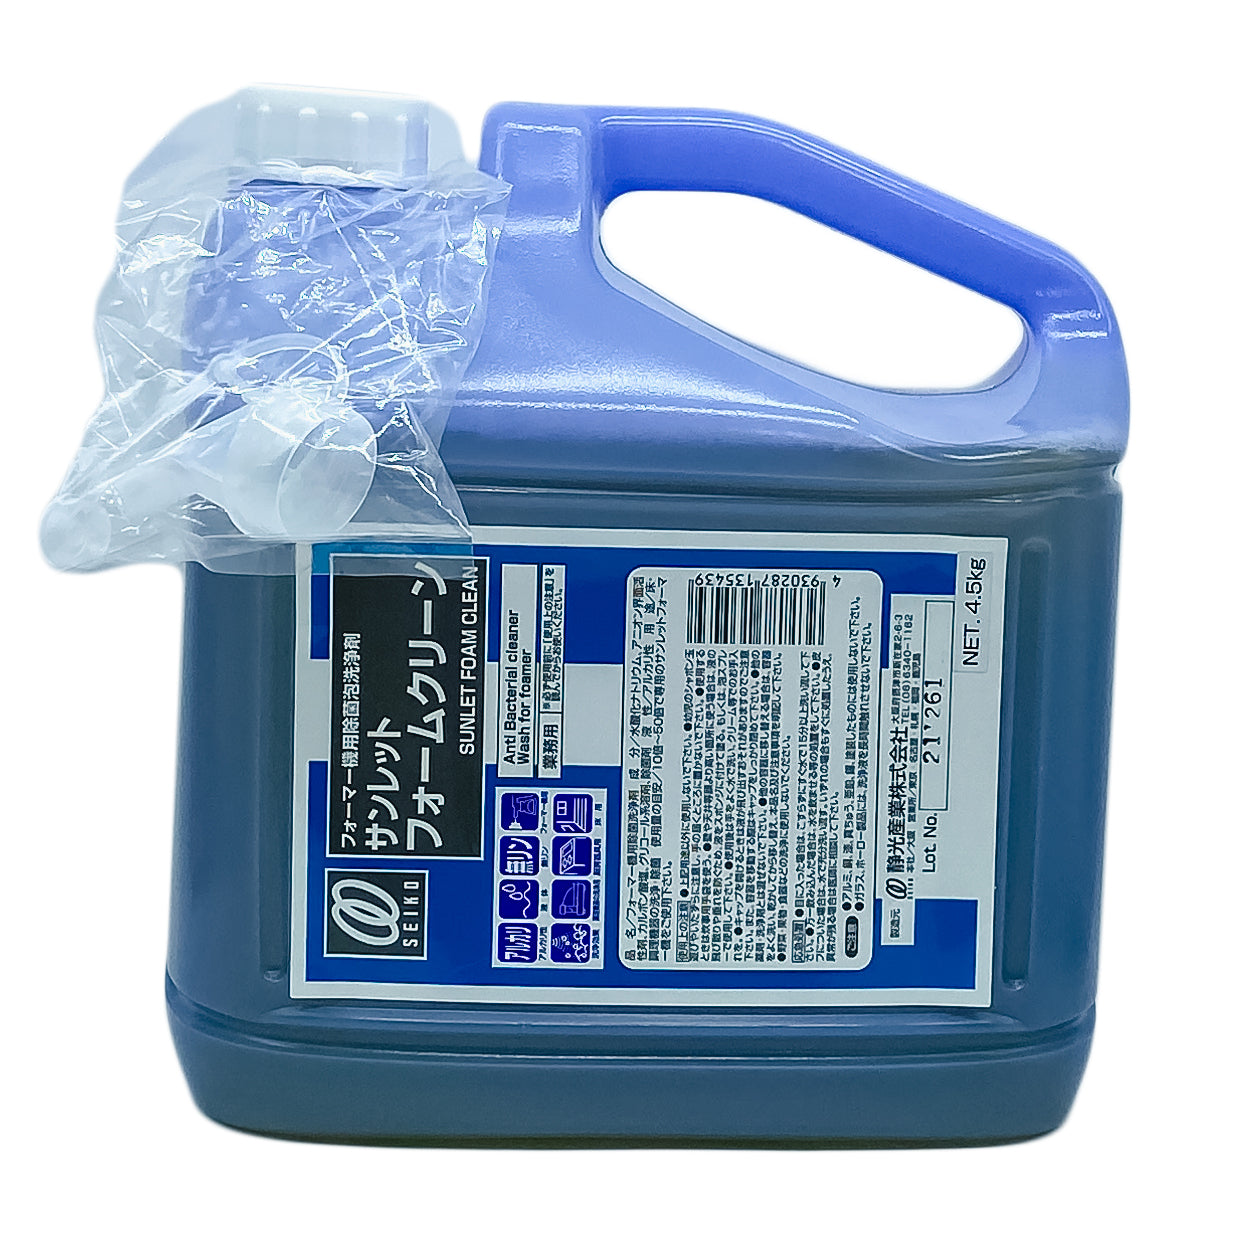 【高濃度床用洗浄剤】静光産業 サンレット フォームクリーン 4.5kg